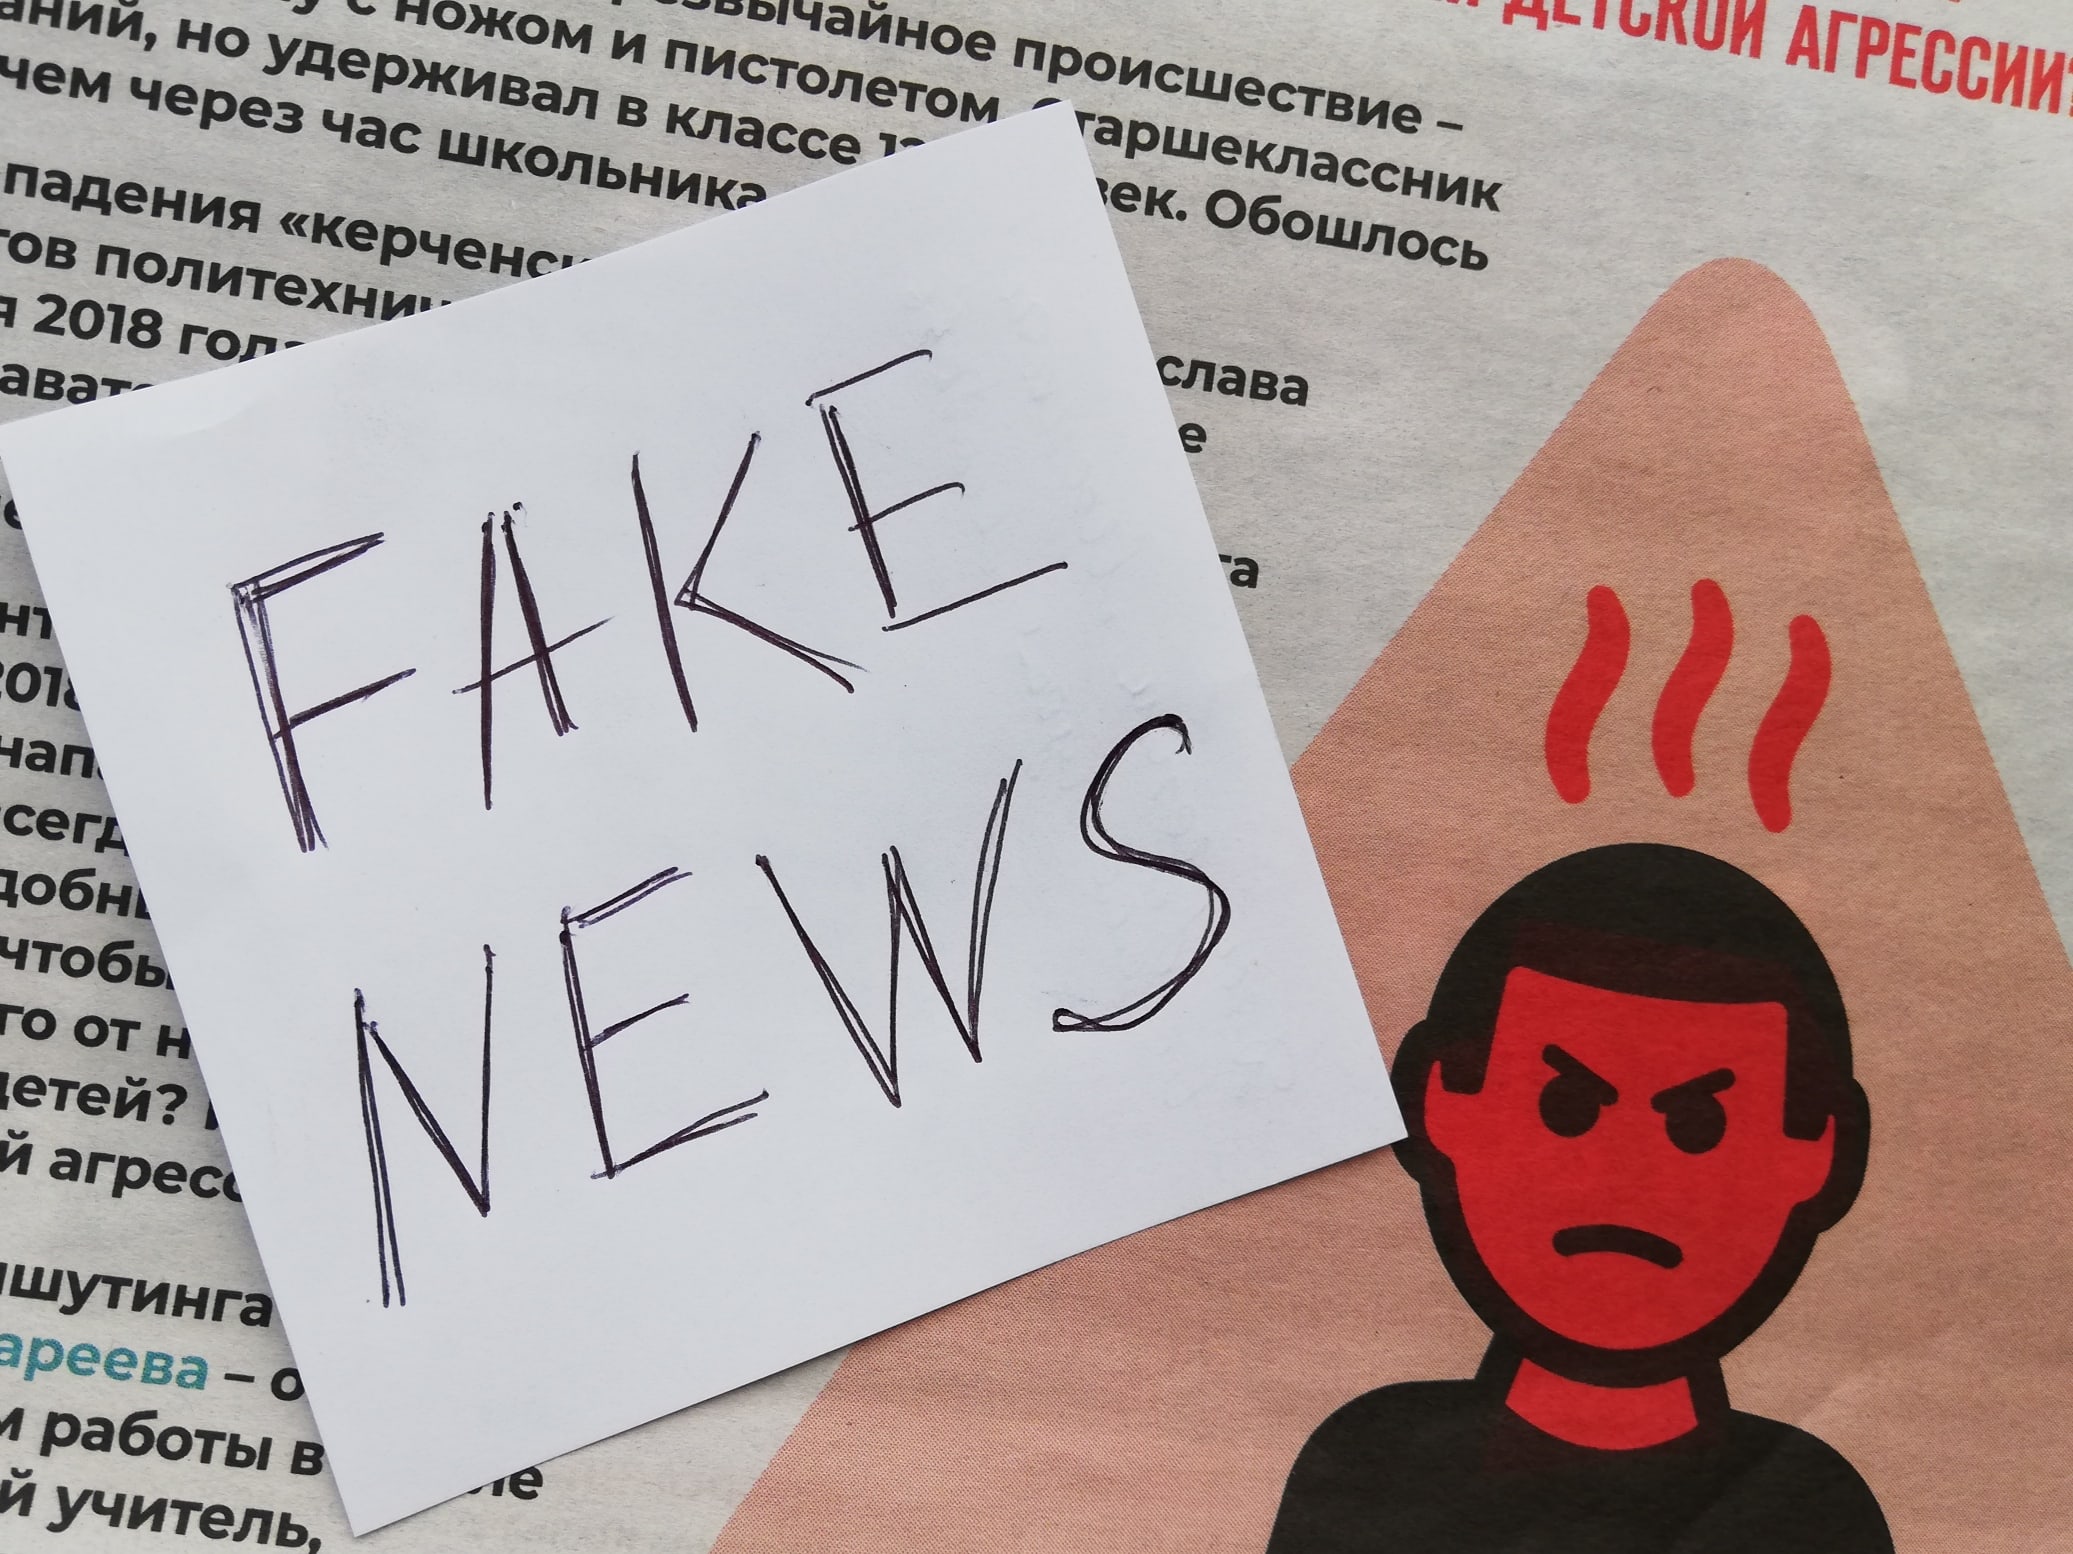 За распространение «фейковых новостей» предусмотрен административный штраф от 30 тысяч рублей